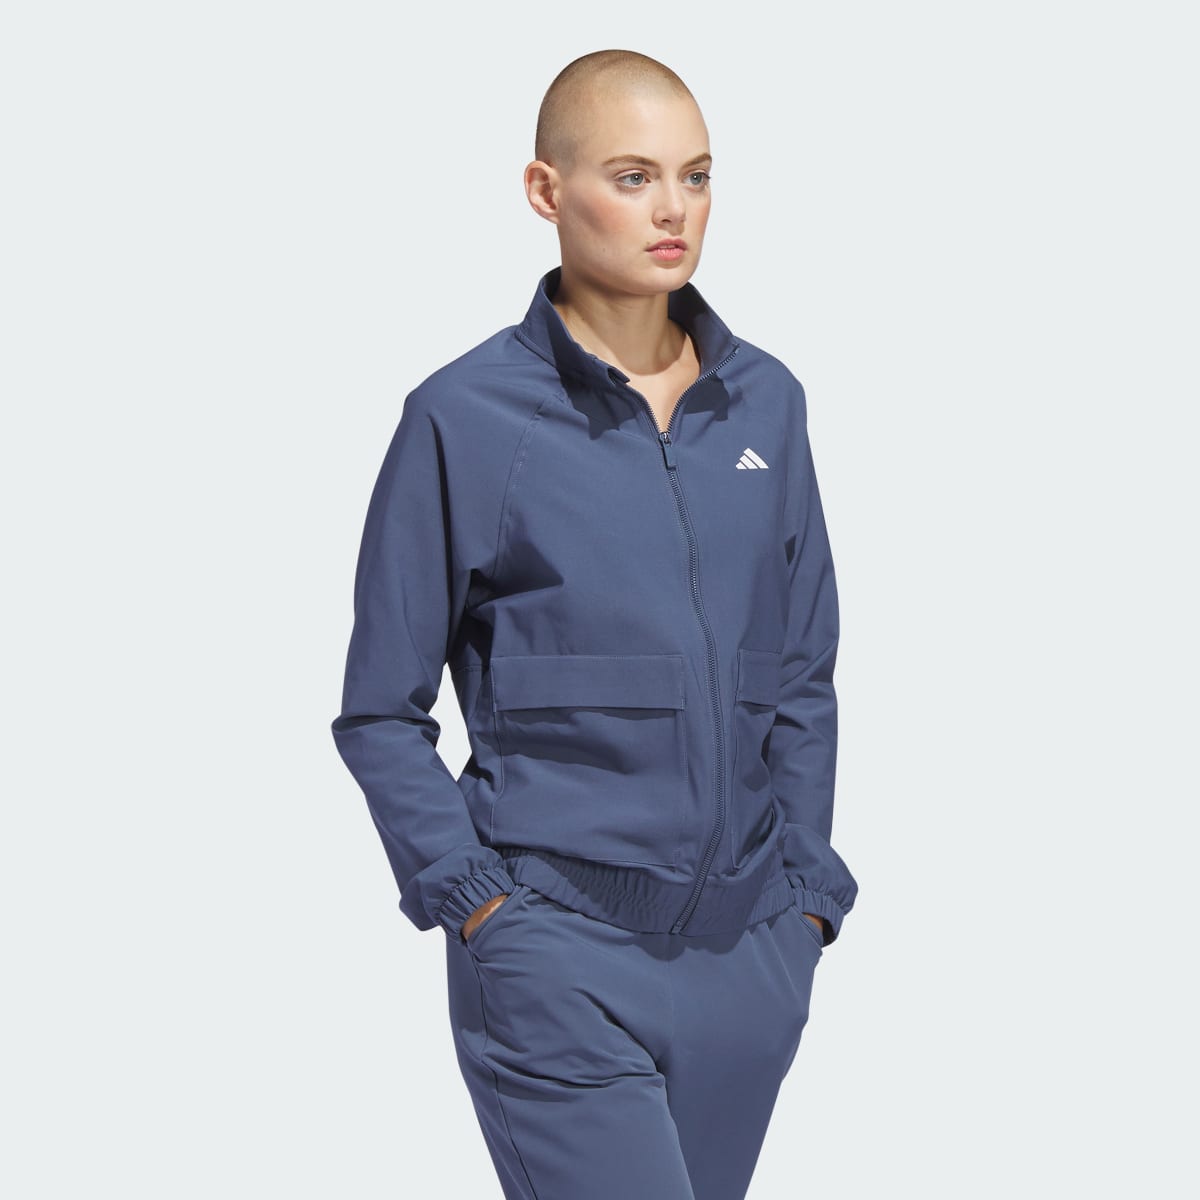 Adidas Women's Ultimate365 Novelty Jacket. 4